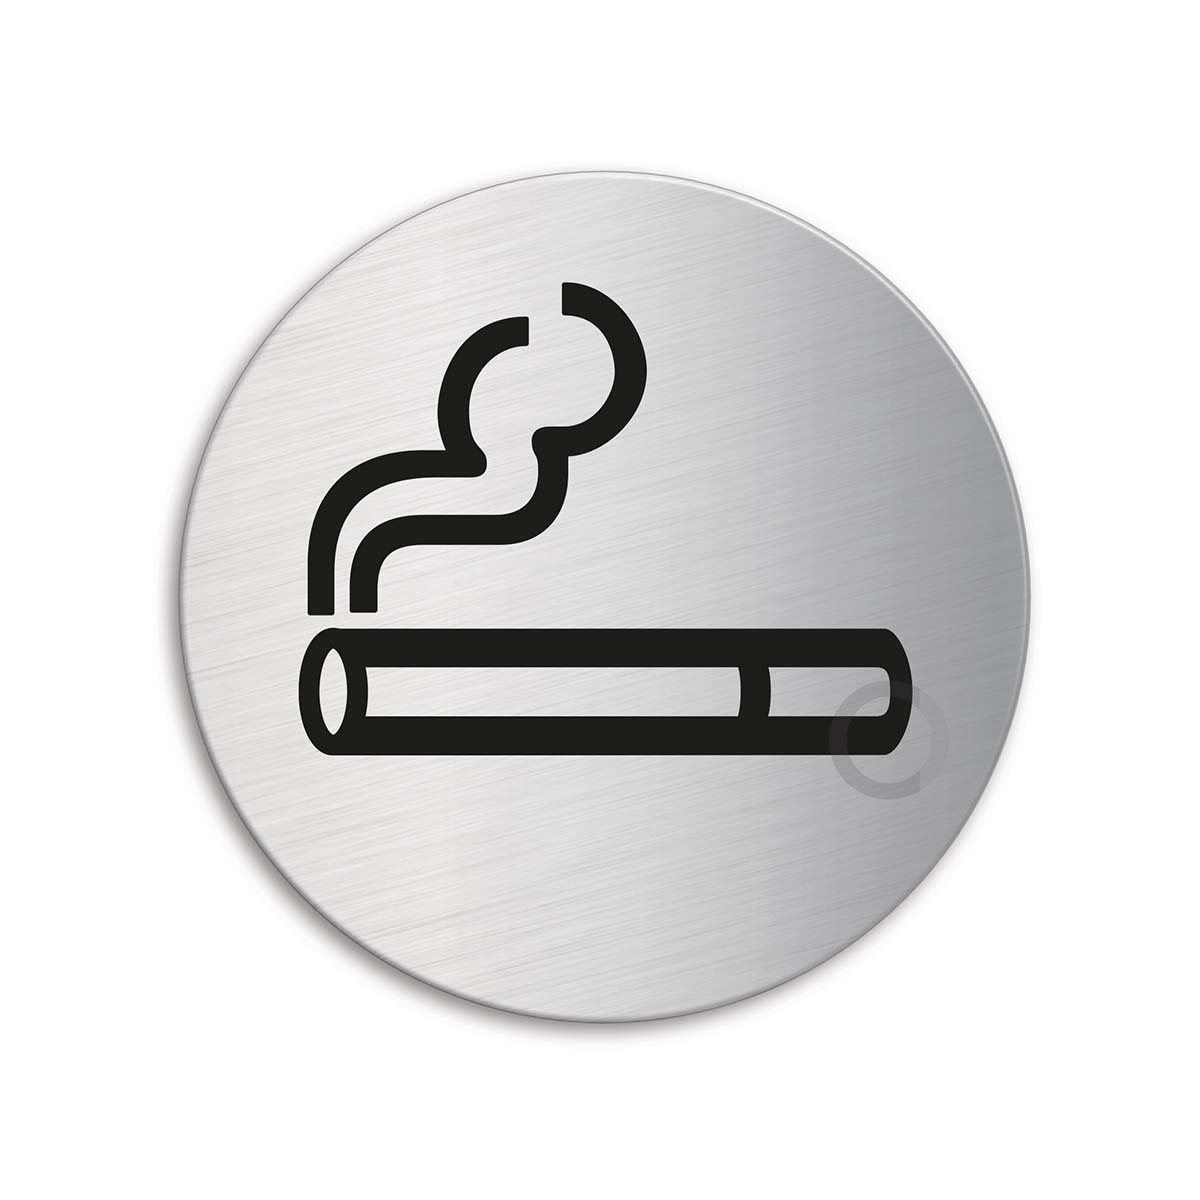 Rauchen verboten-Rauchverbot-Edelstahl-Schild-75 mm Ø-Warnschild-Hinweisschild 